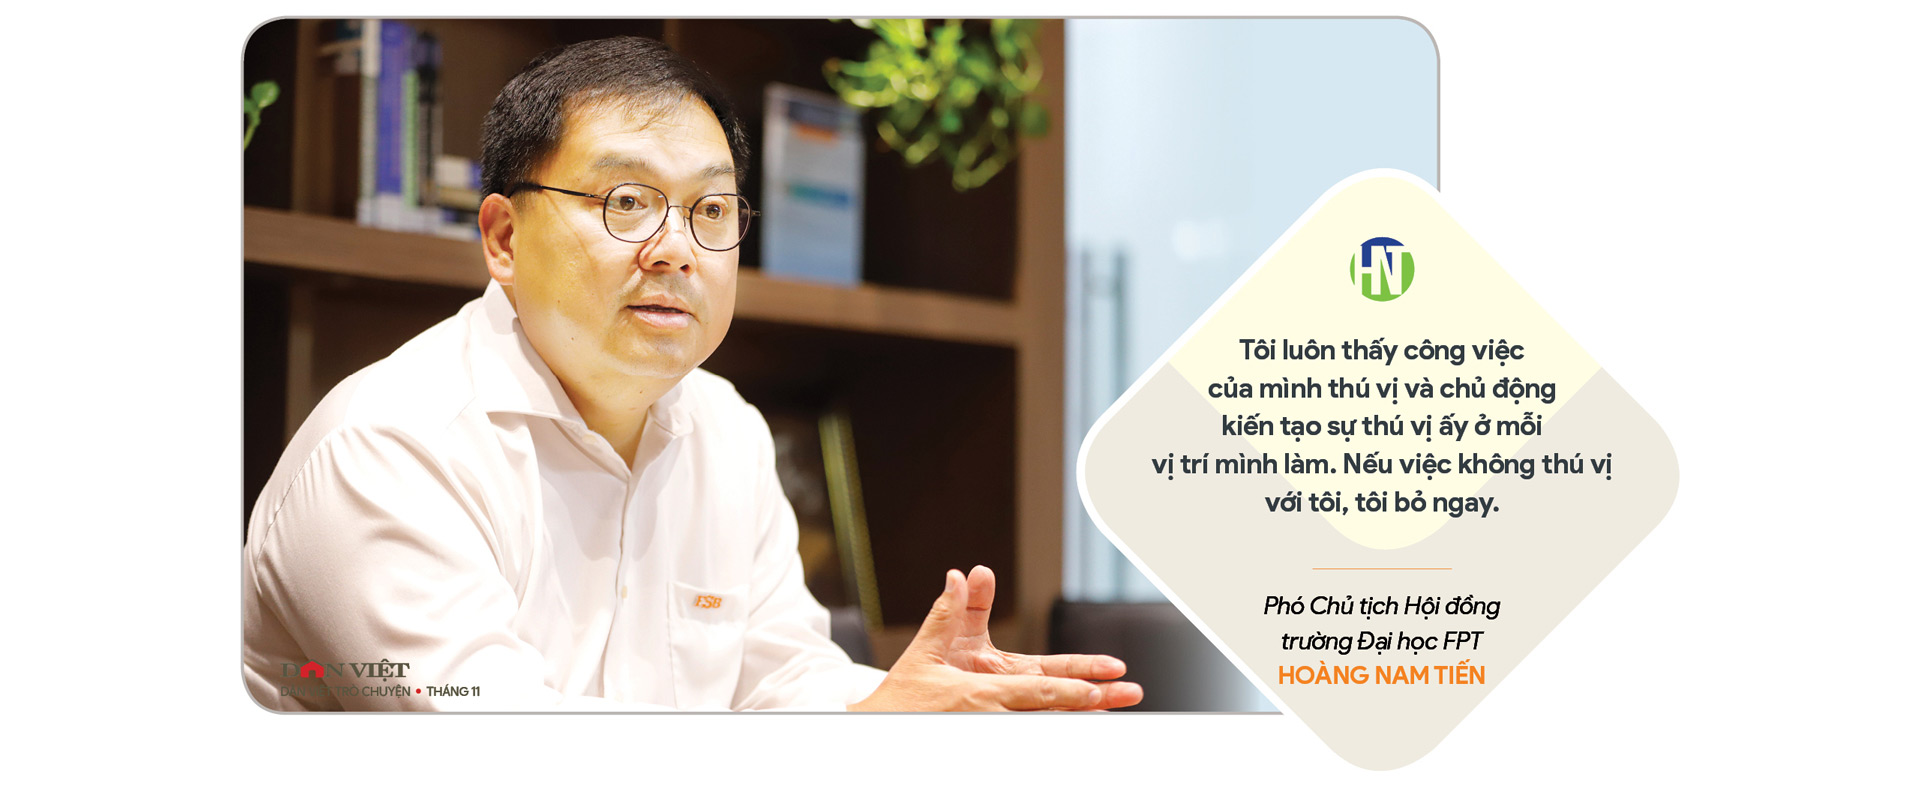 Phó Chủ tịch Hội đồng trường Đại học FPT Hoàng Nam Tiến: Phải biến AI thành “con sen” của mình - Ảnh 13.